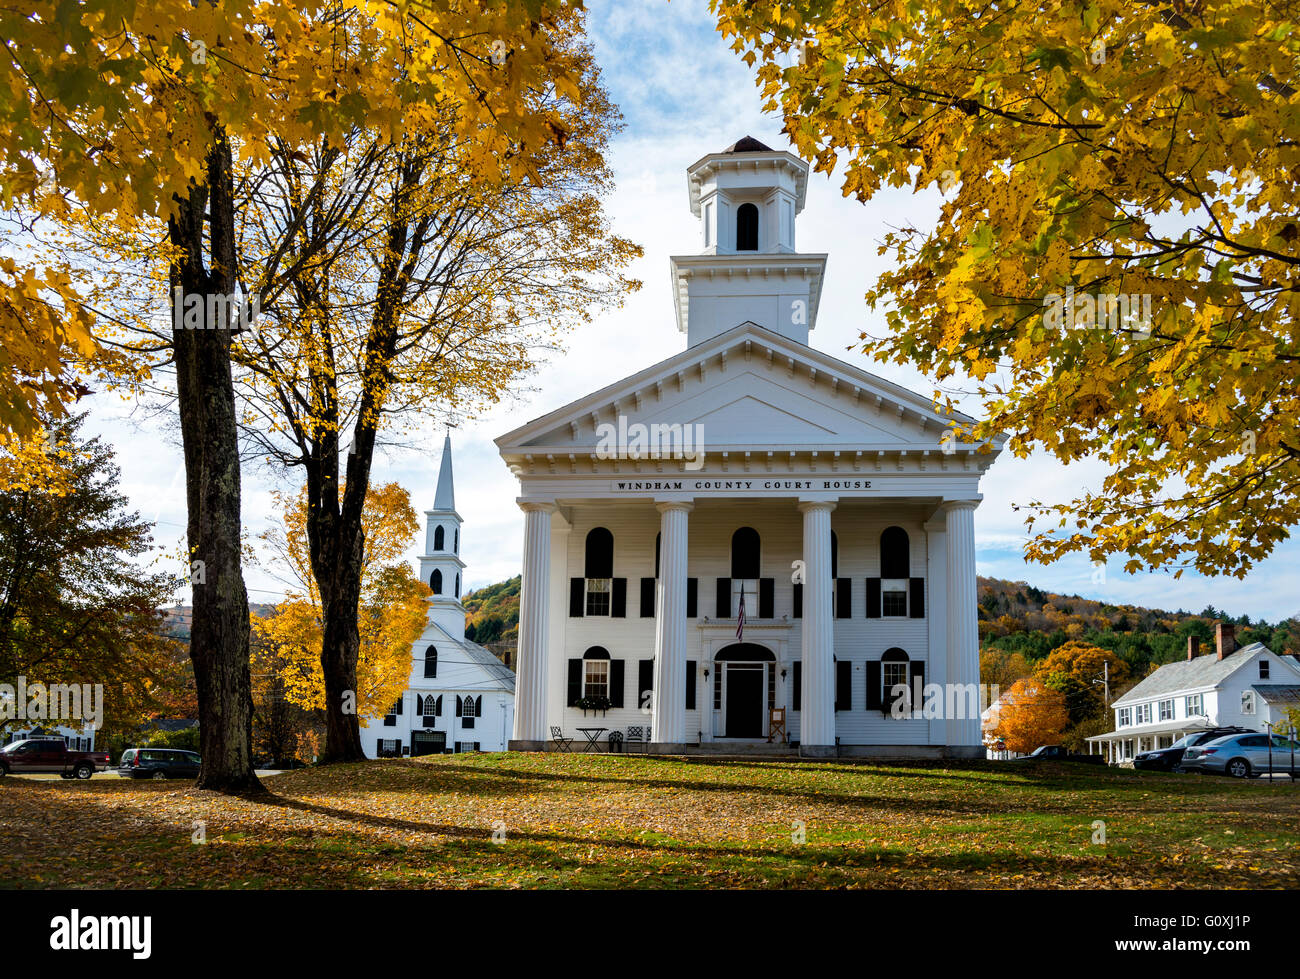 Image d'automne du feuillage à Stratton Mountain, New York de court house et église avec des couleurs vives en fin d'après-midi. Banque D'Images